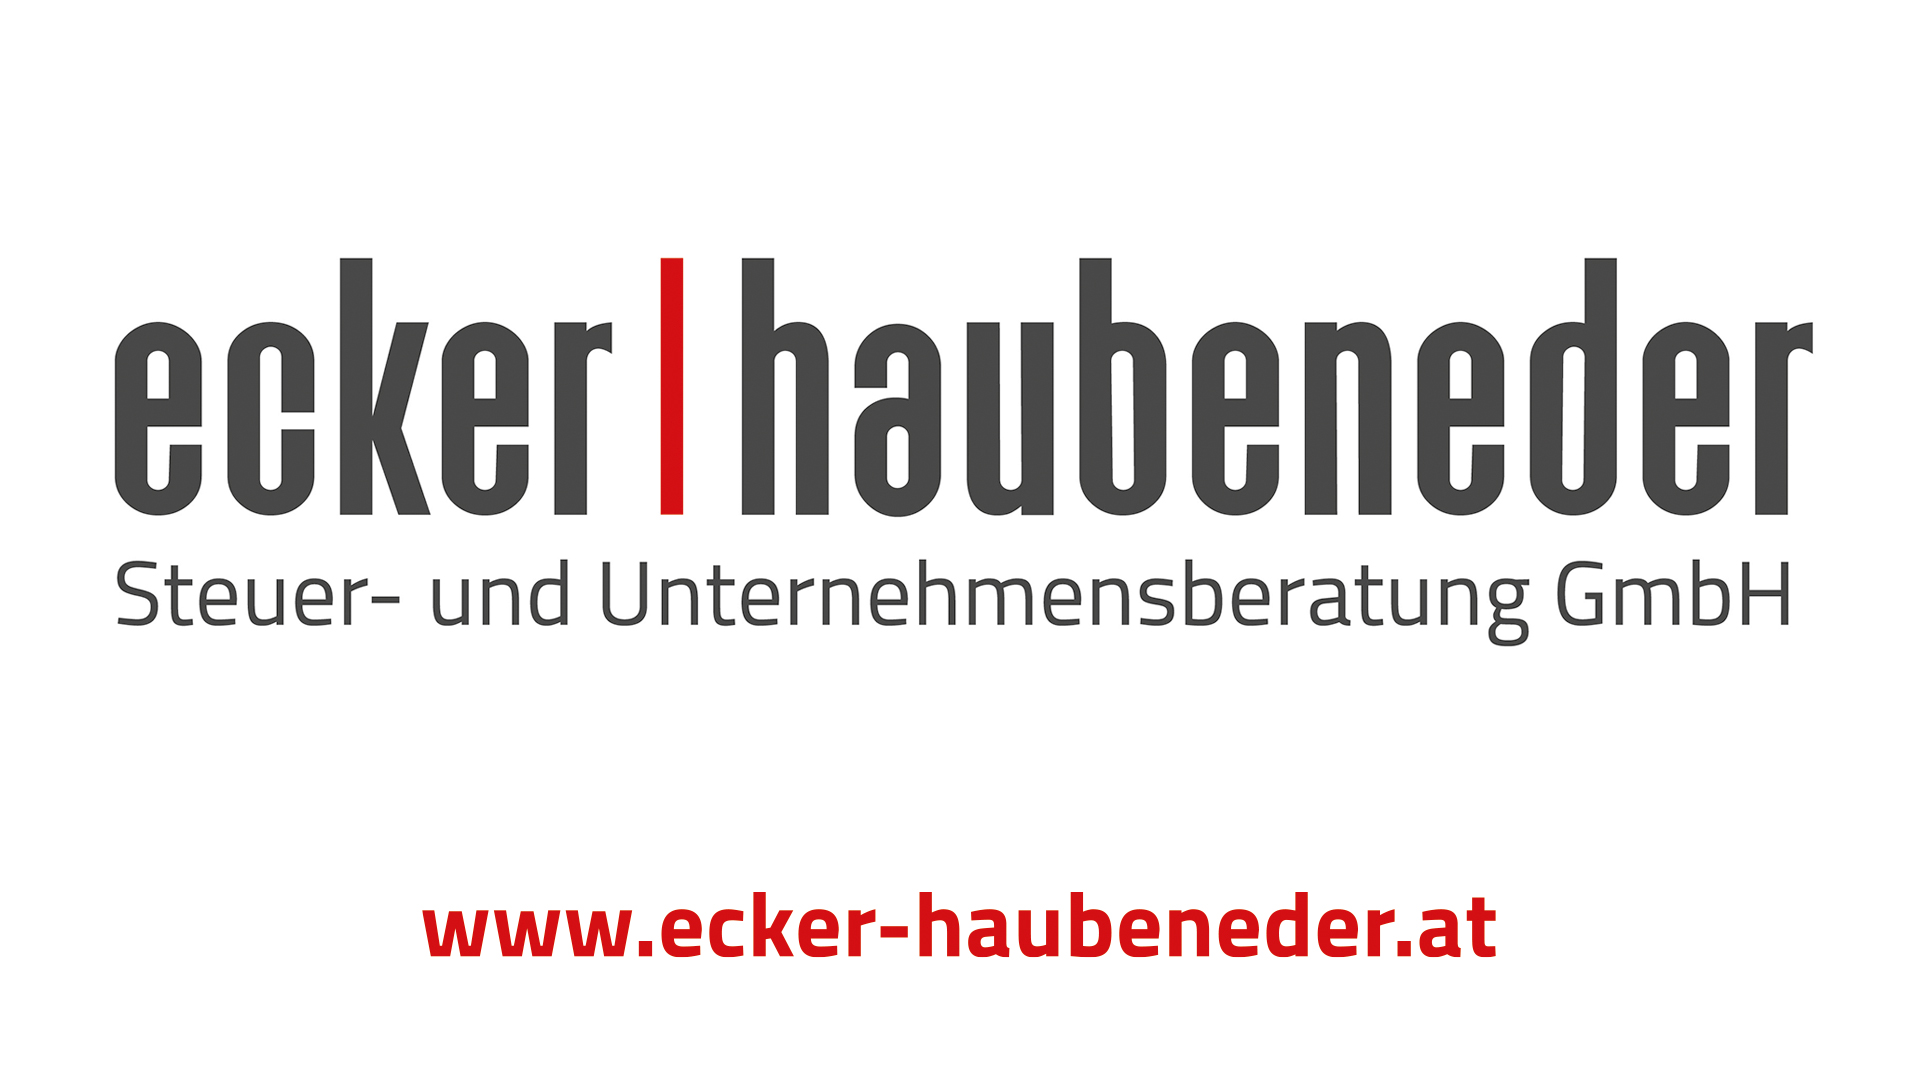 Ecker, Haubeneder